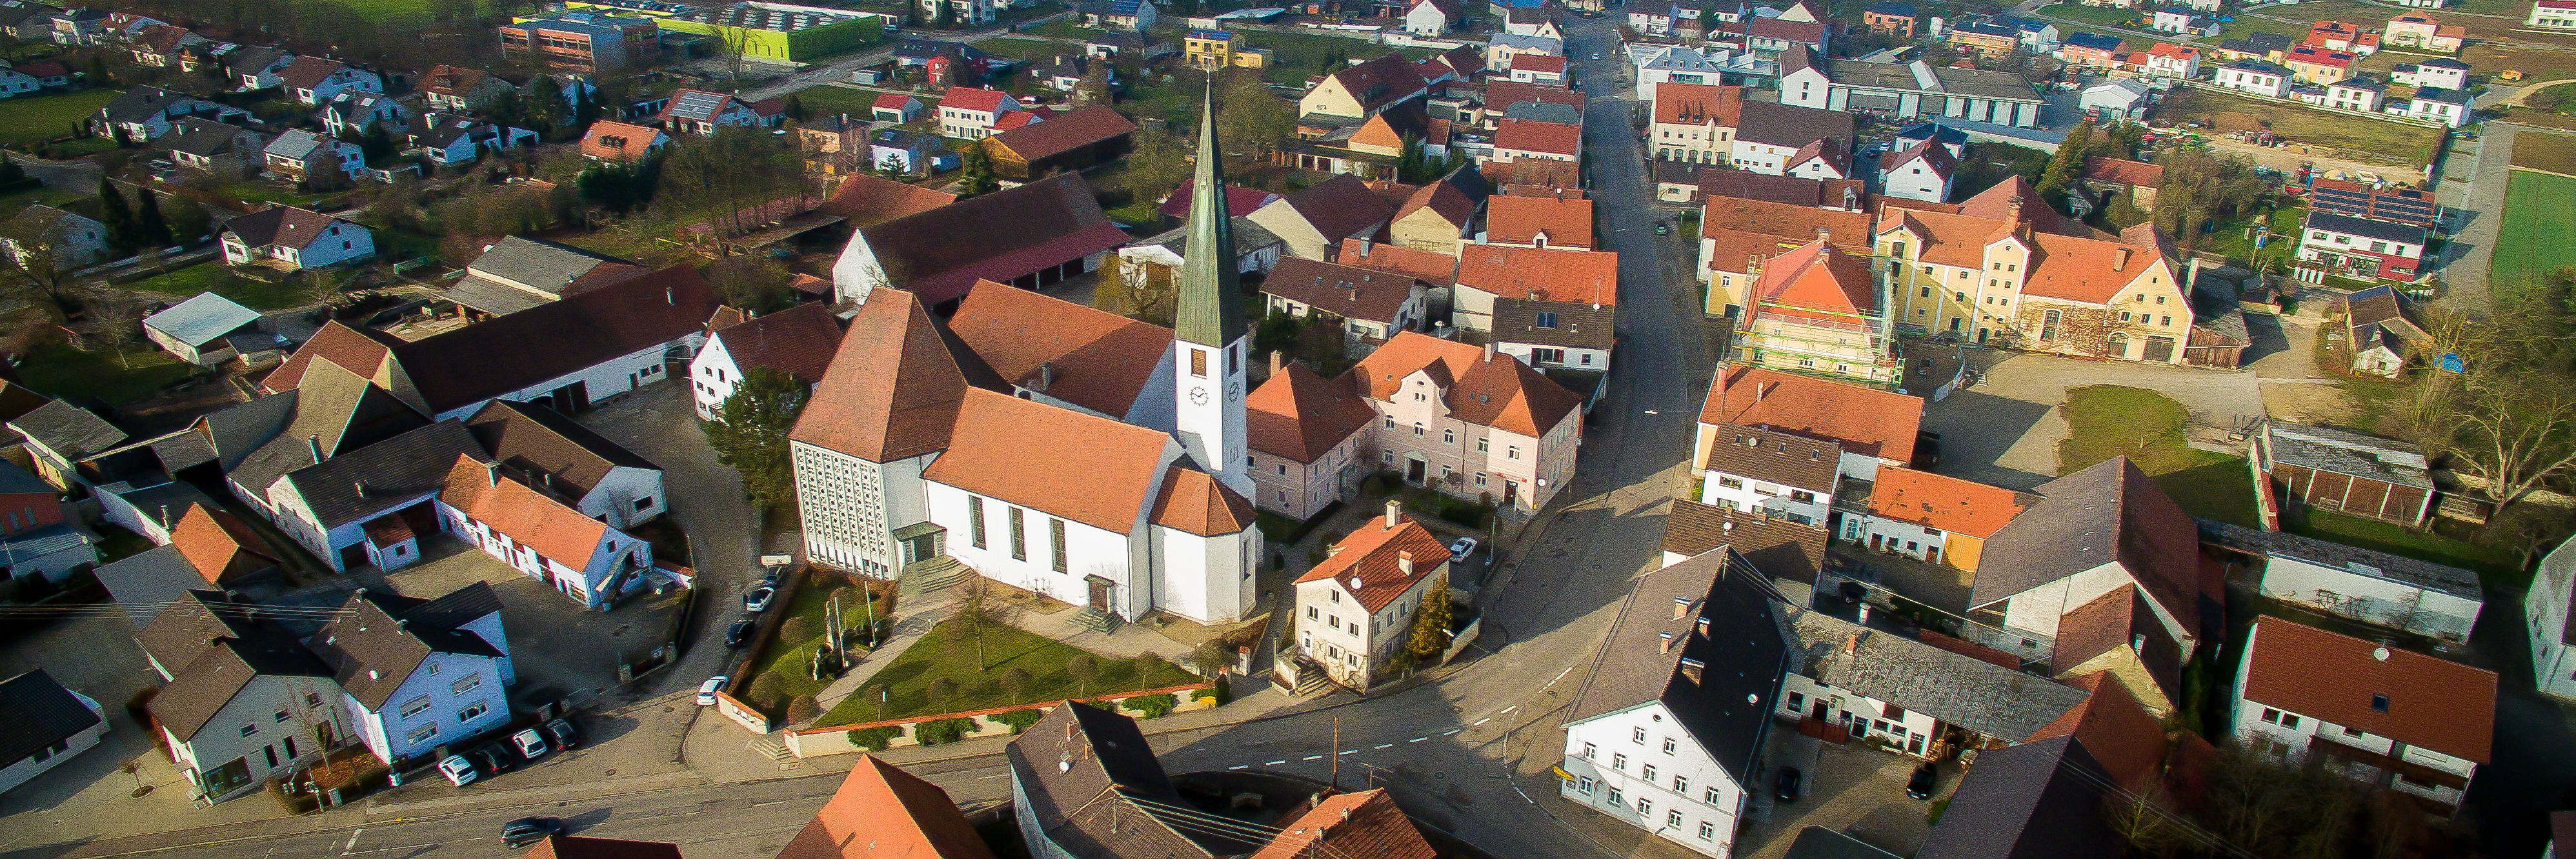 Luftbild der Ortsmitte von Eitensheim